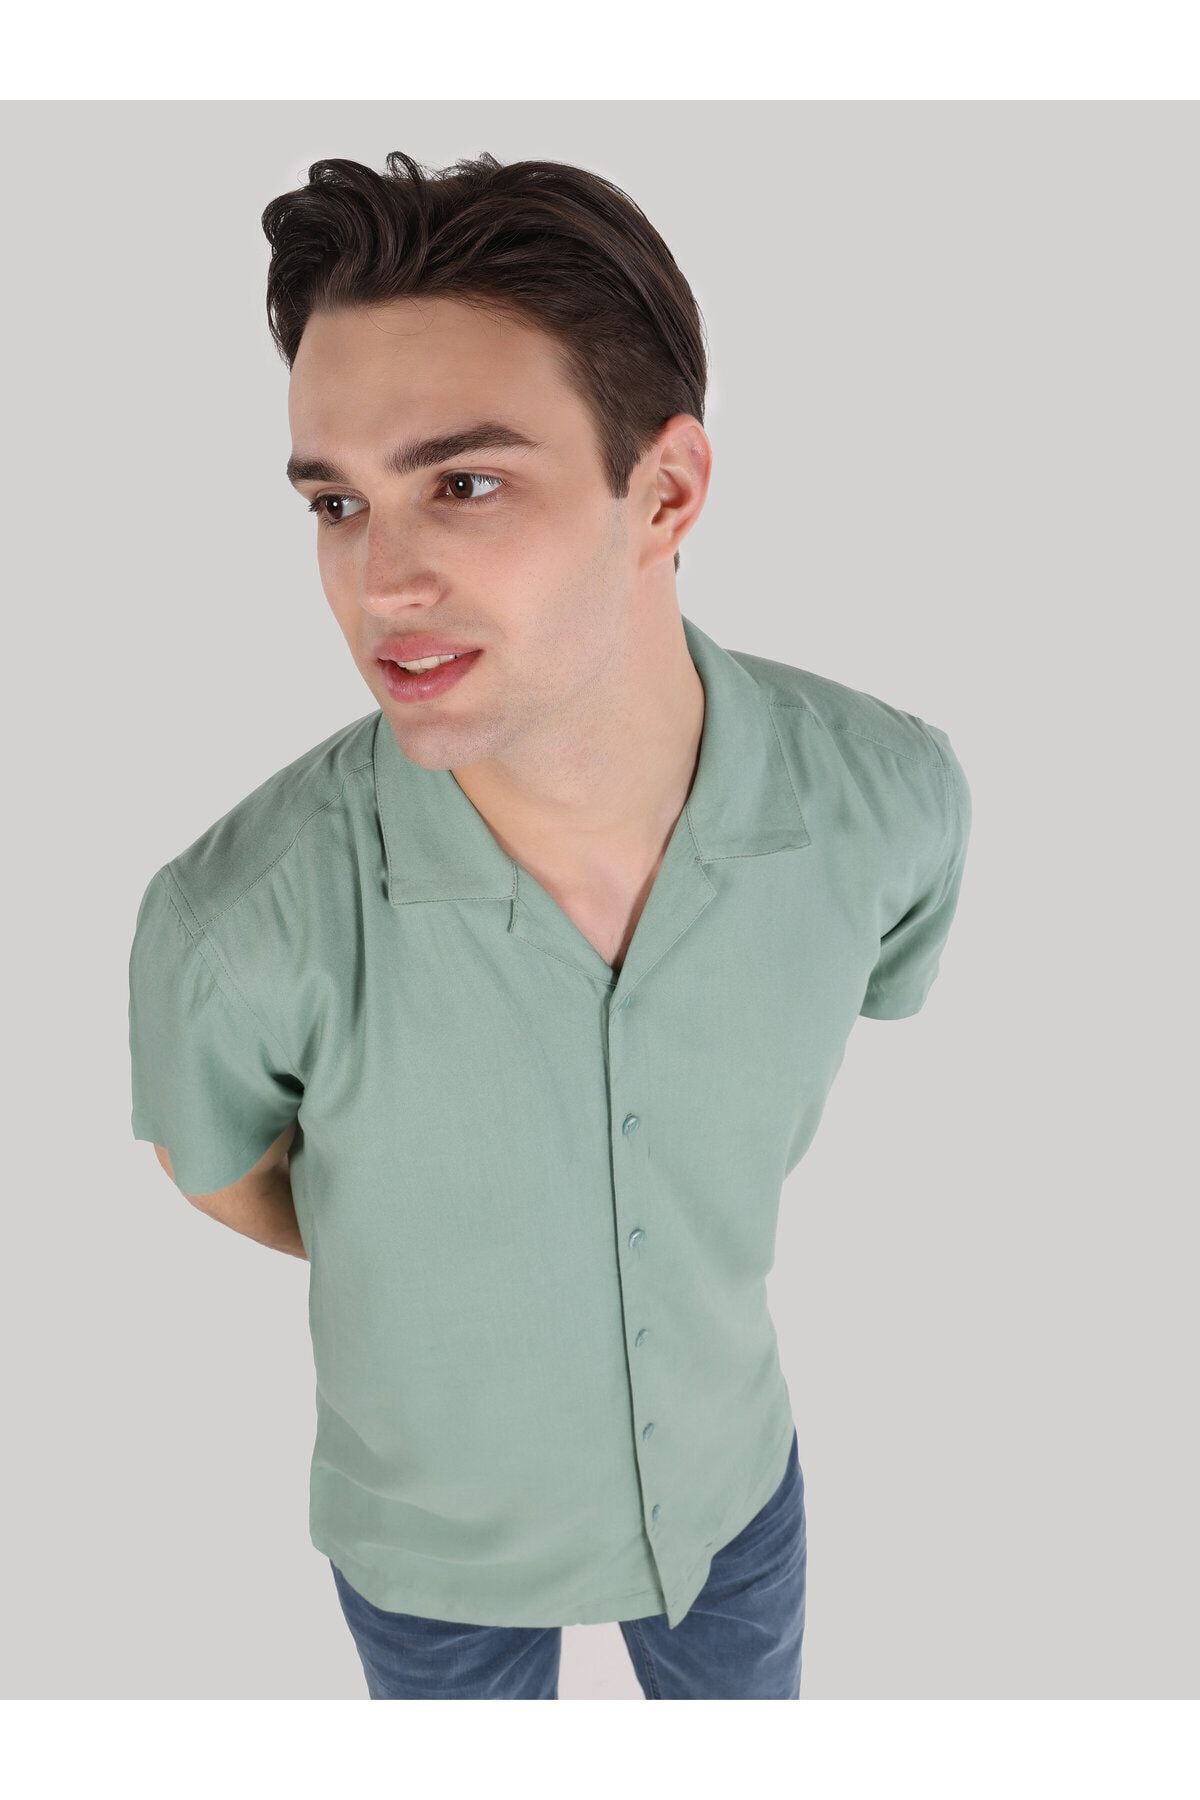 Colin’s پیراهن بازوی کوتاه مردان سبز مناسب